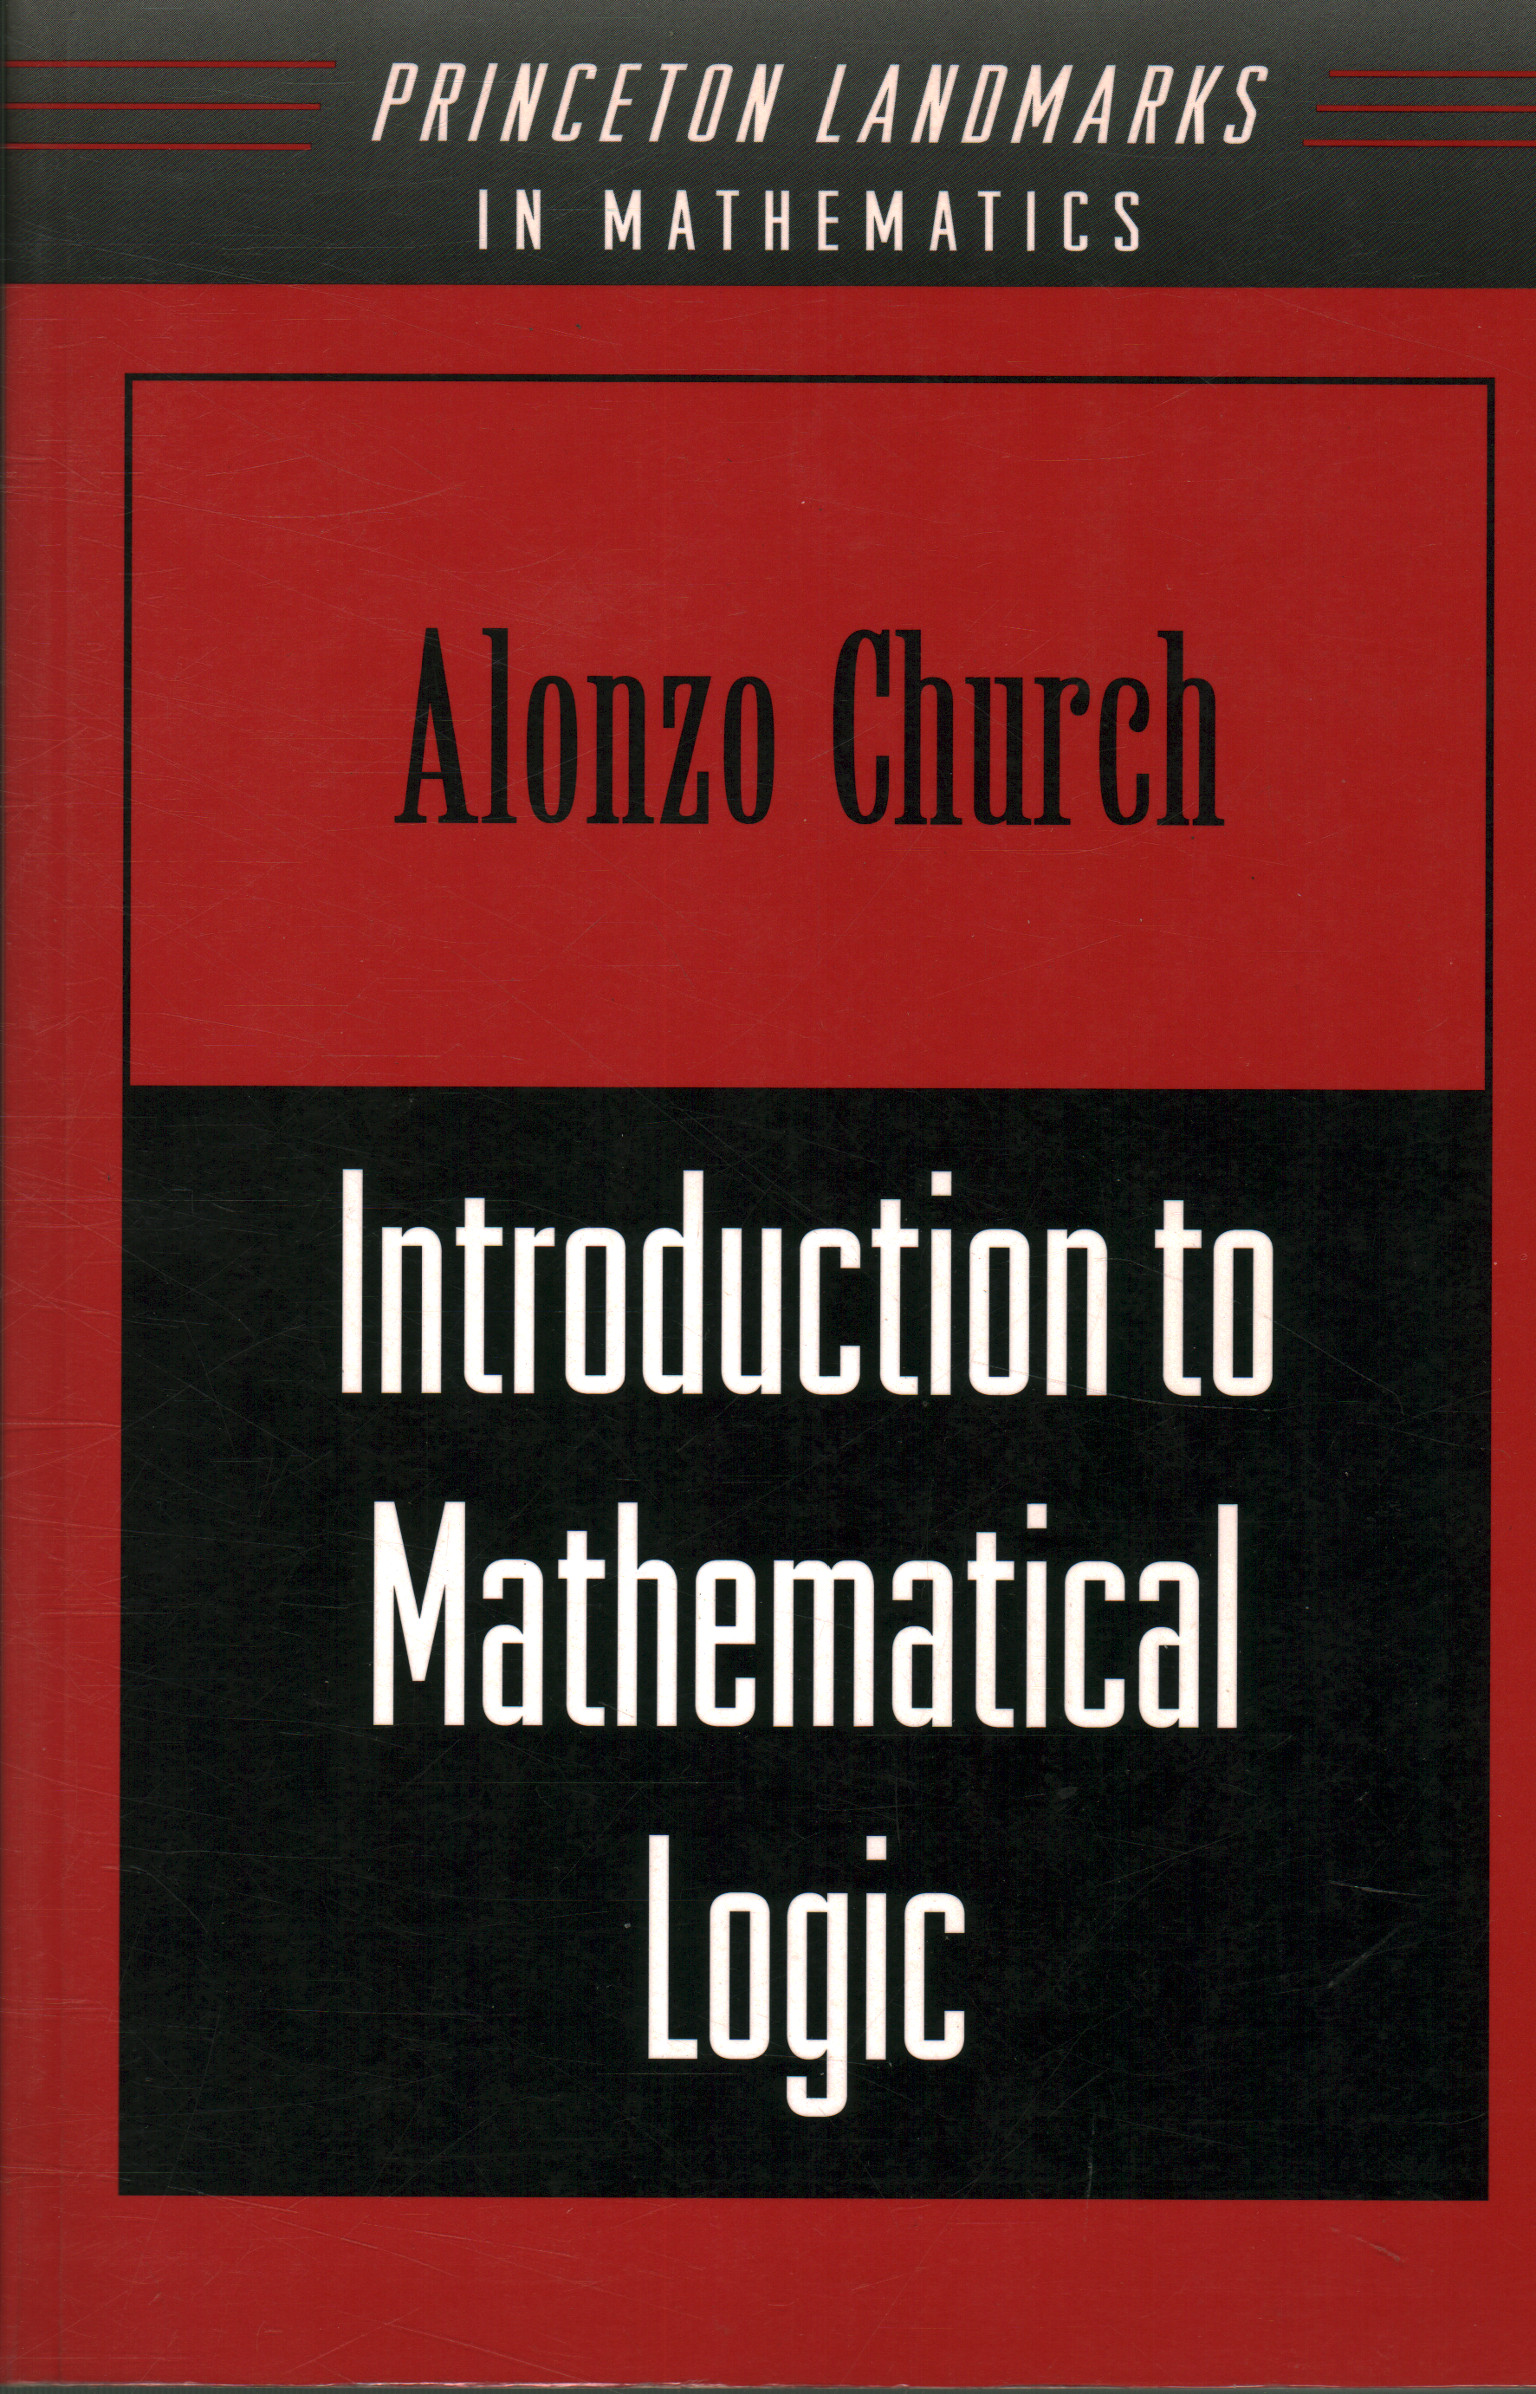 Einführung in die mathematische Logik